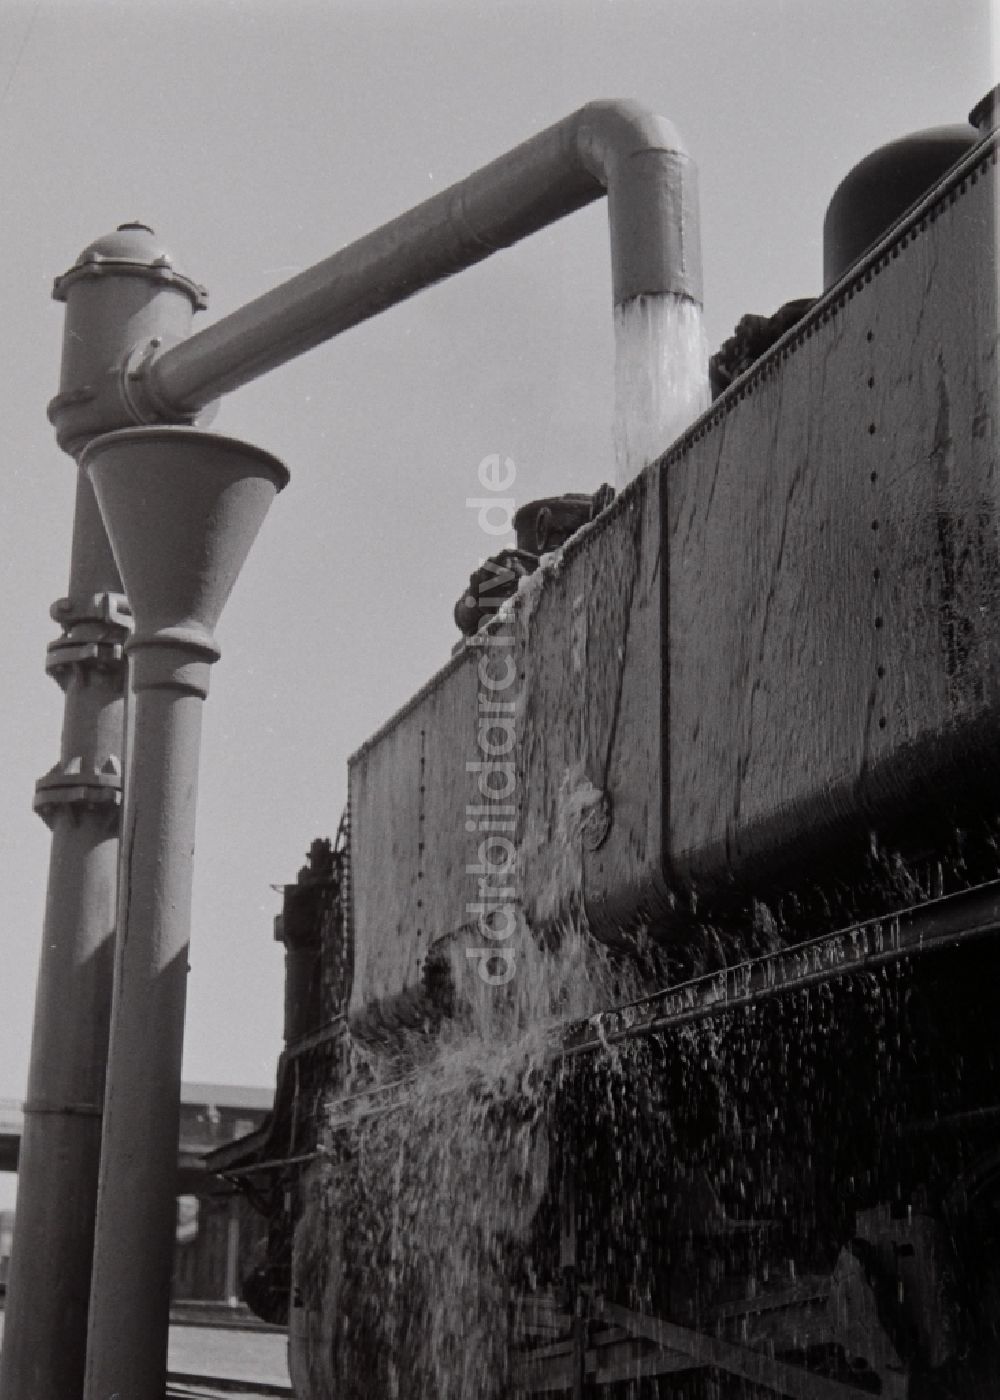 DDR-Fotoarchiv: Halberstadt - Wassernahme einer Dampflokomotive der Baureihe 93 der Deutschen Reichsbahn in Halberstadt in Sachsen-Anhalt in der DDR